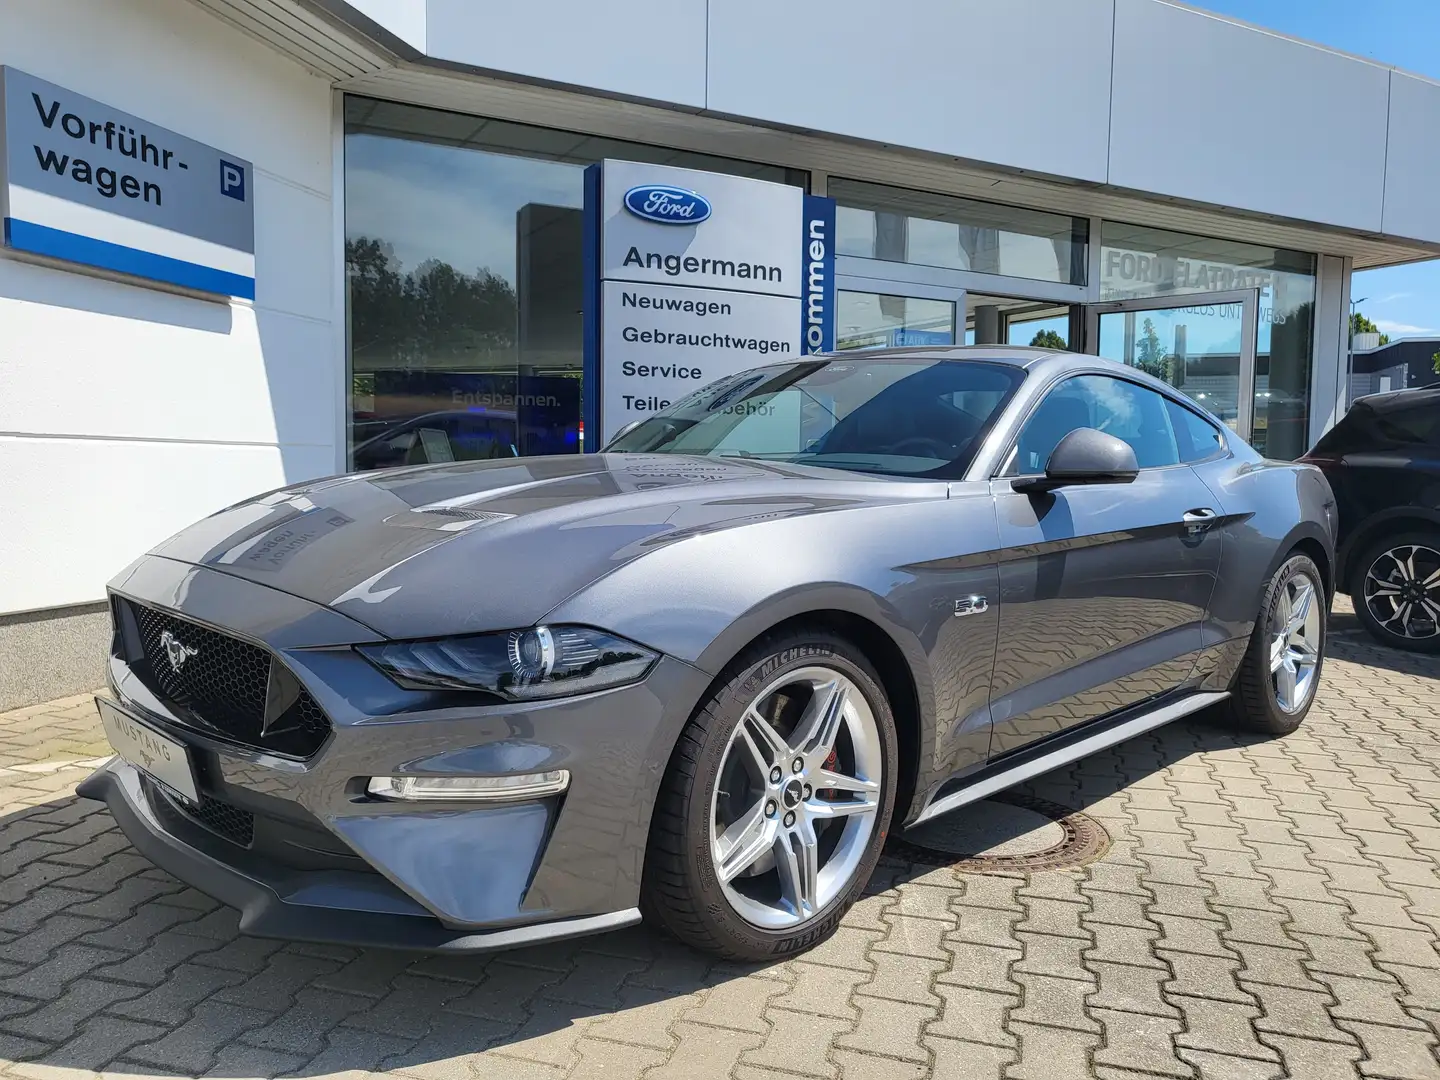 Ford Mustang Coupé in Grau tageszulassung in Neustadt/Sachsen für € 61.990,-